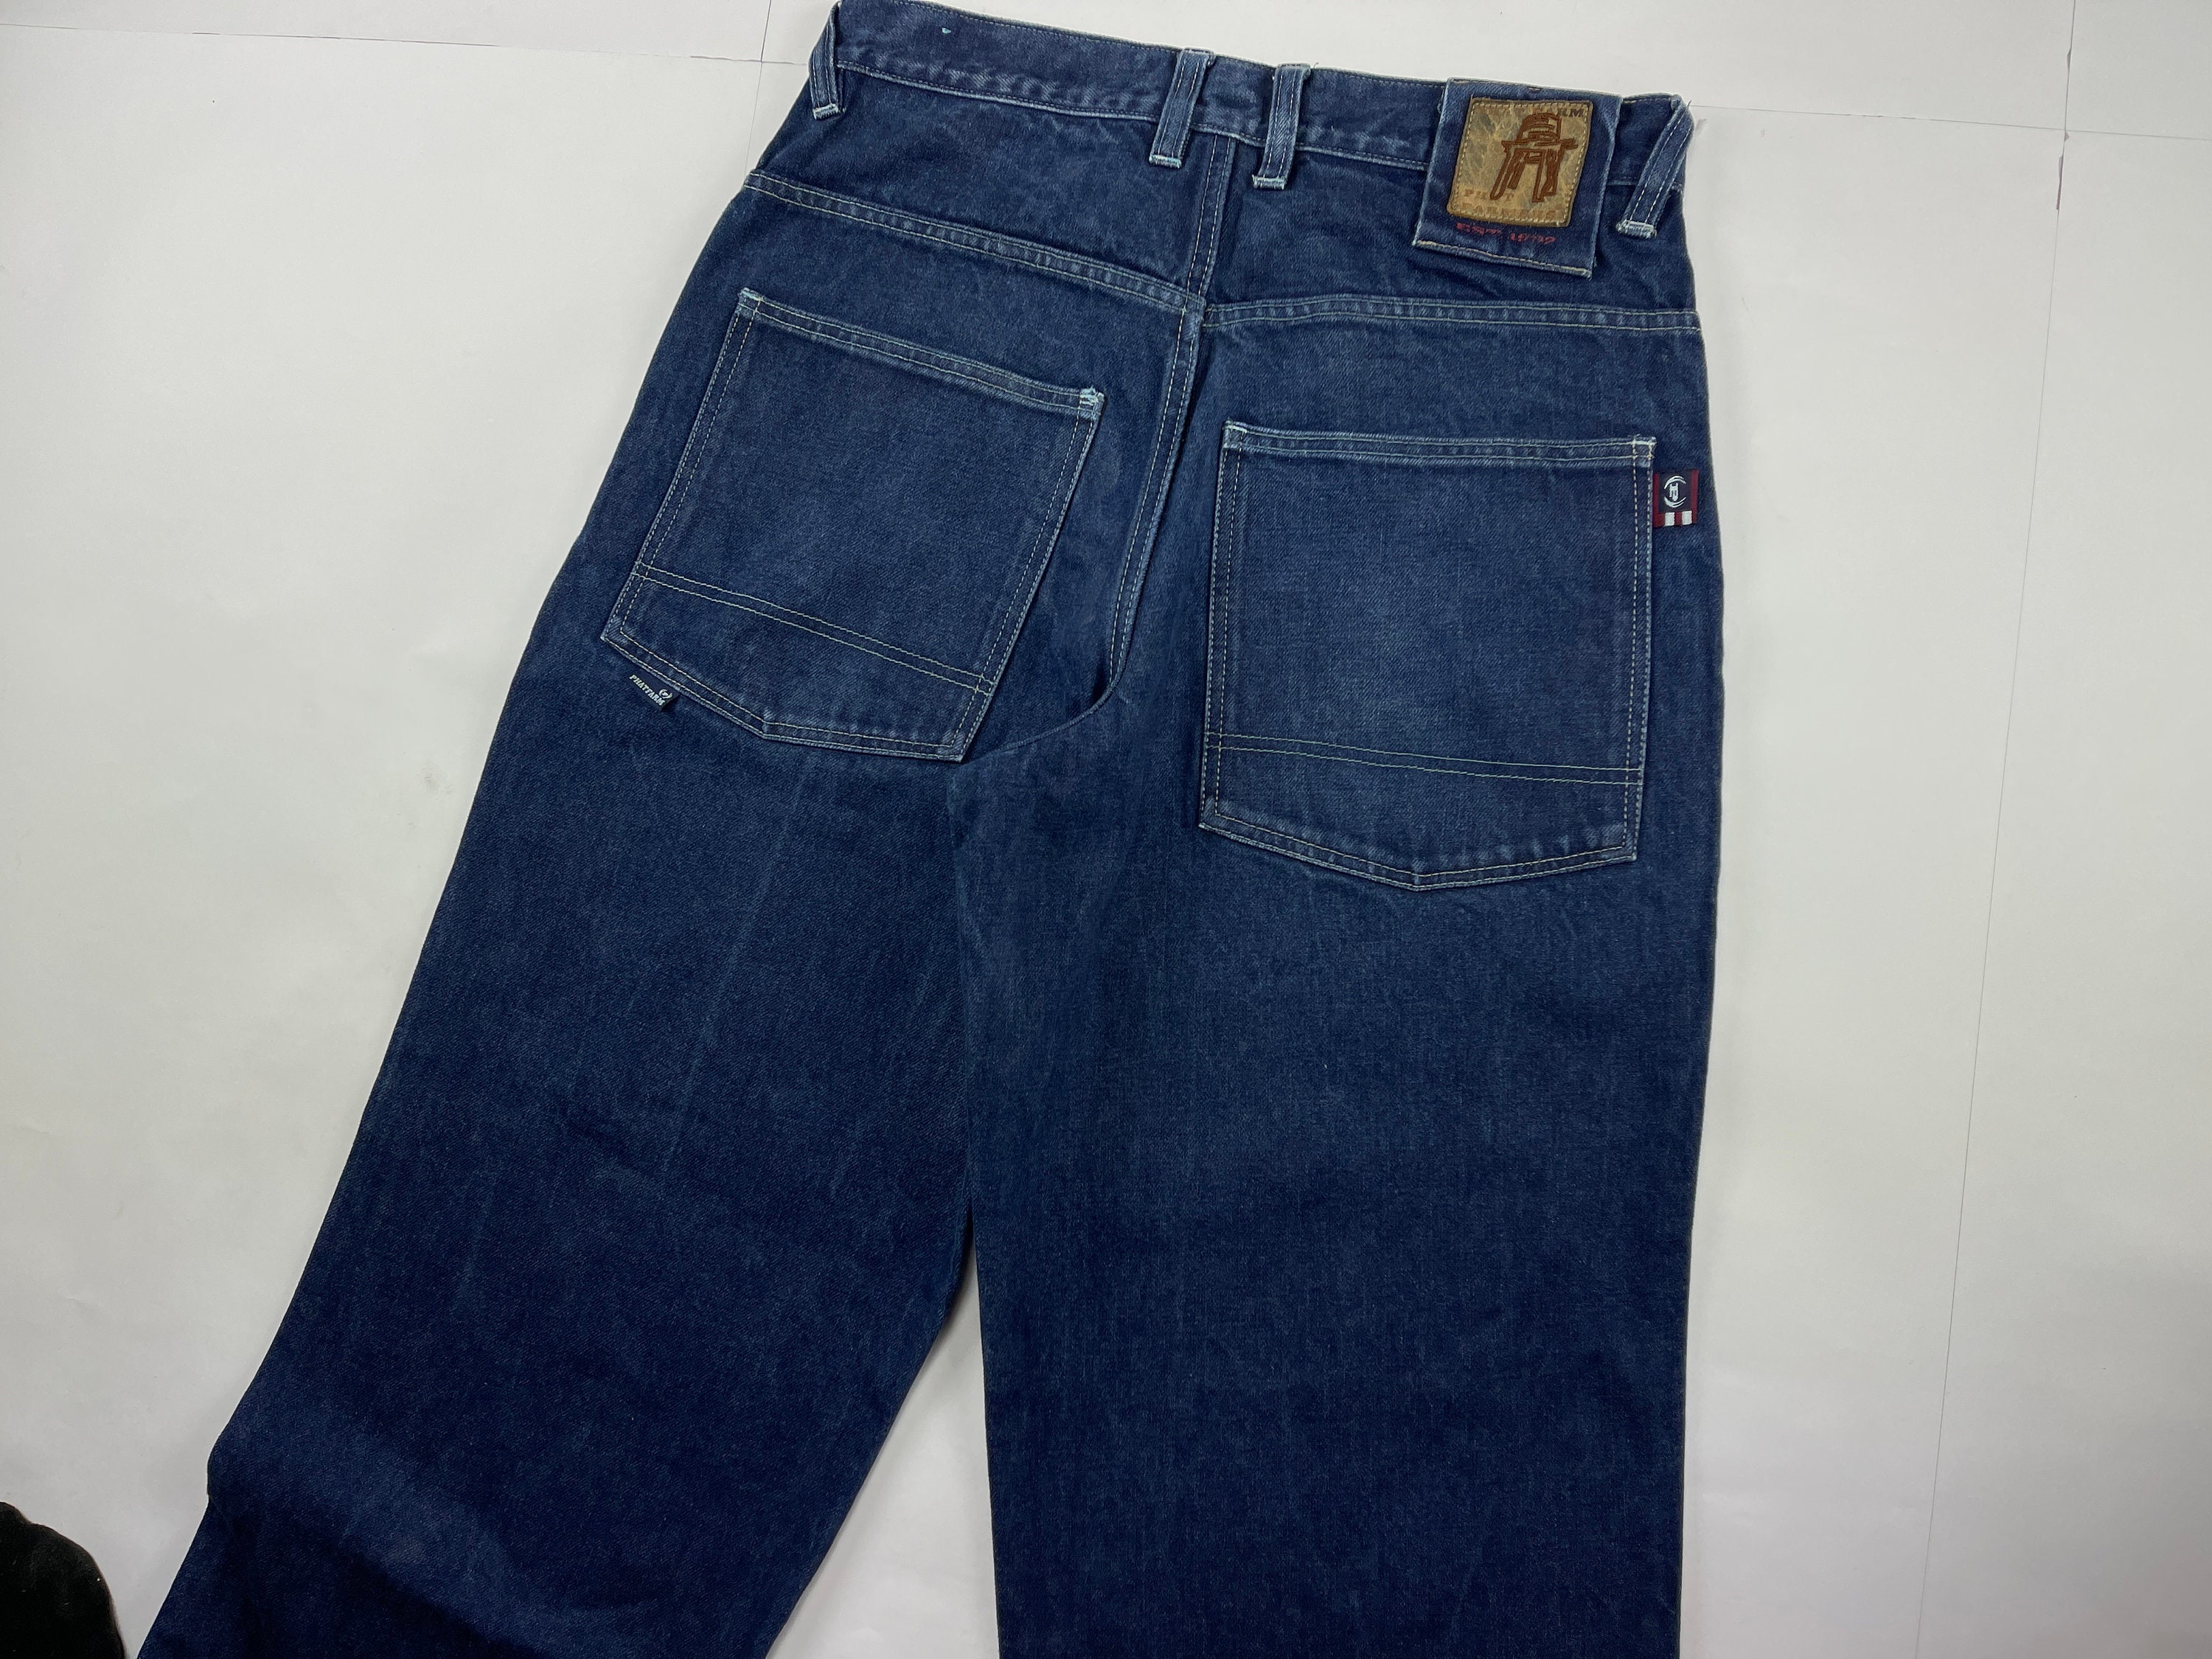 Phat Farm Jeans Blue Vintage Baggy Jeans 90s Hip Hop - Etsy